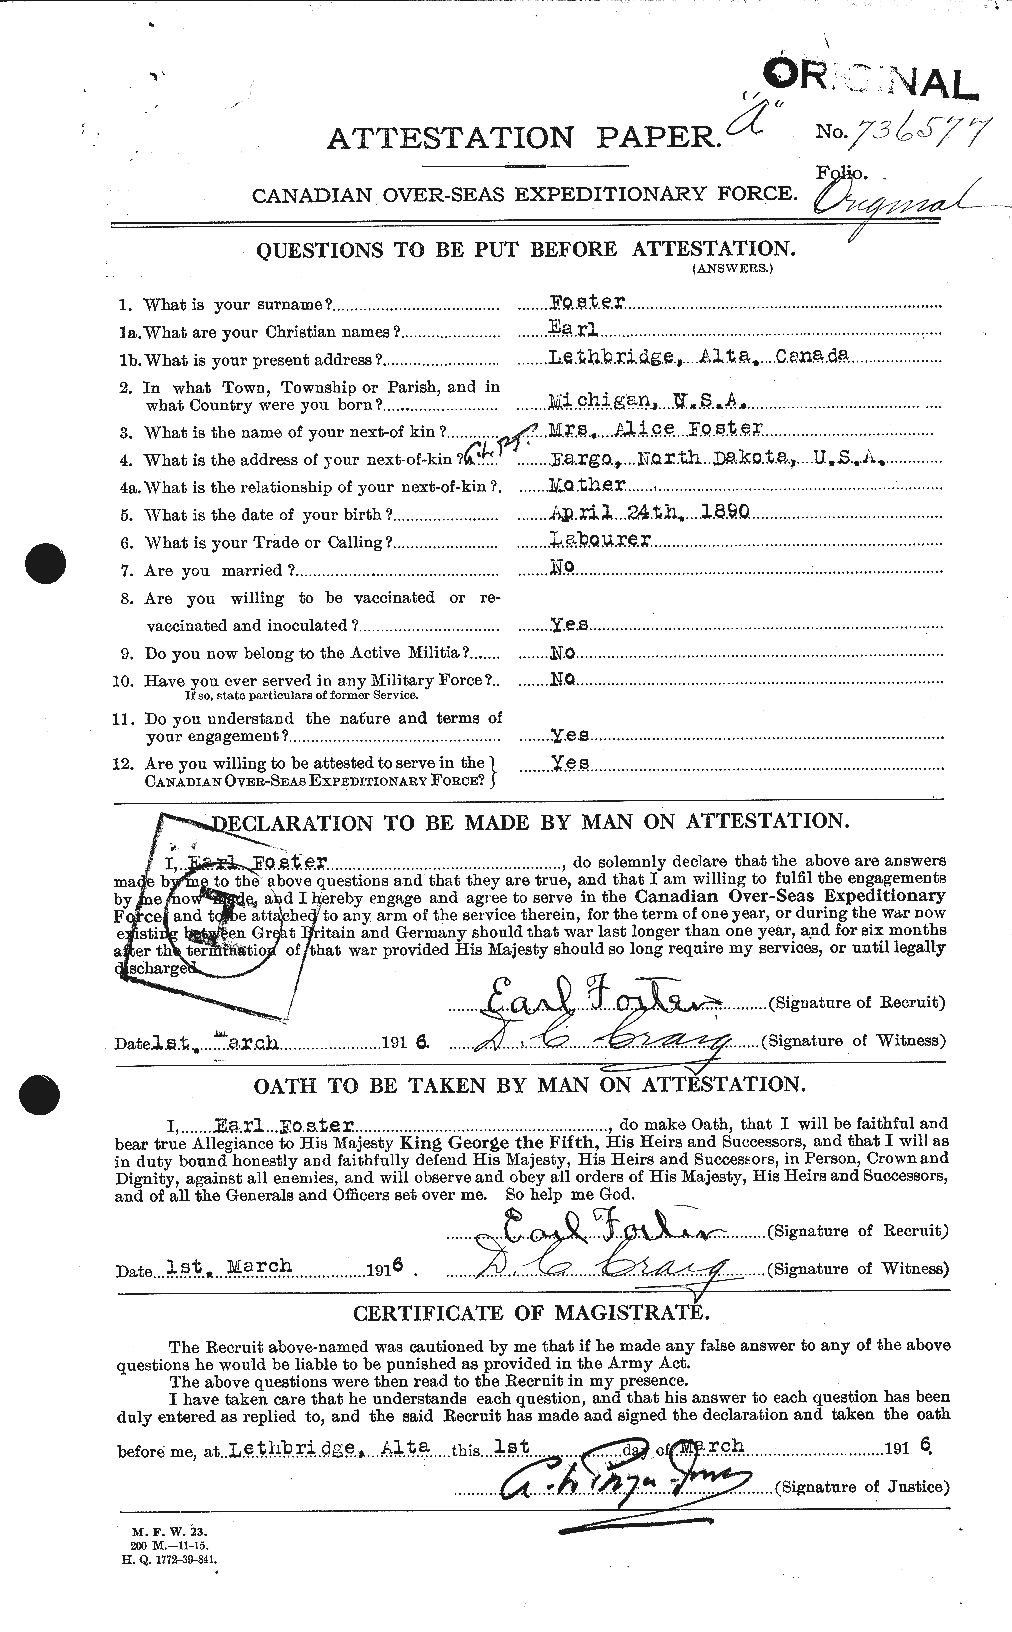 Dossiers du Personnel de la Première Guerre mondiale - CEC 330567a